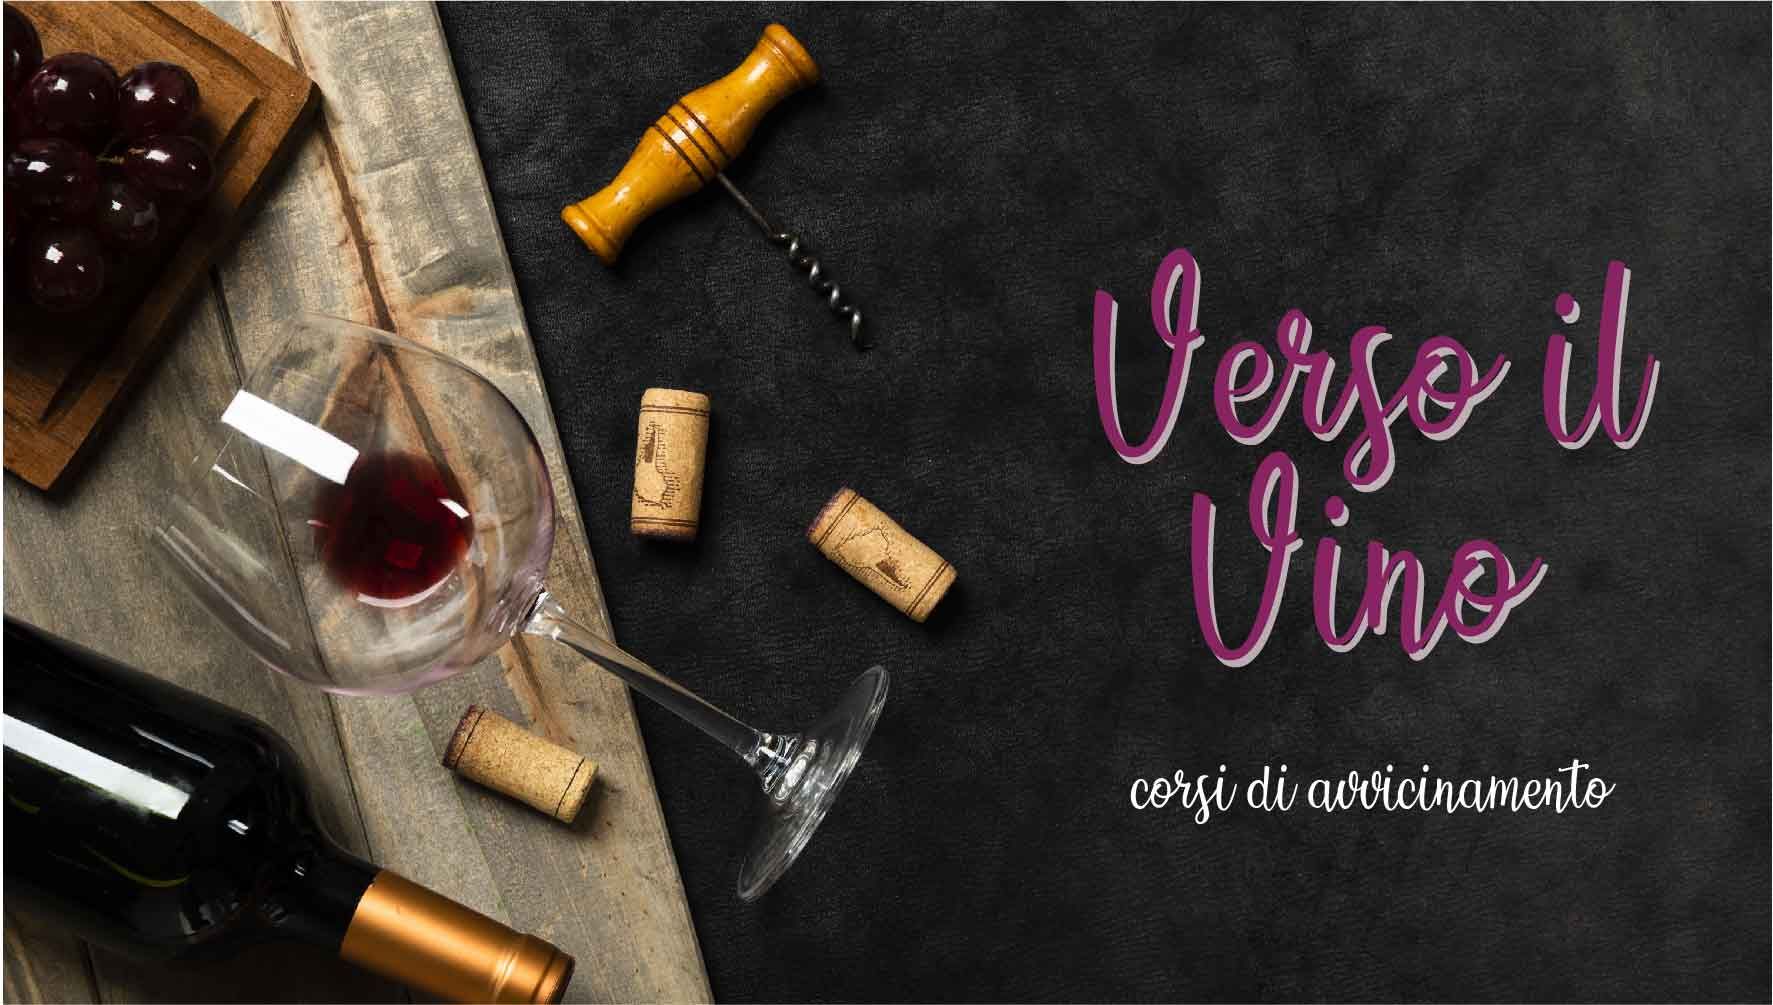 Bottiglia, bicchiere, tappi, cavatappi e uva stese su un tavolo con a fianco la scritta "Verso il Vino corsi di avvicinamento"